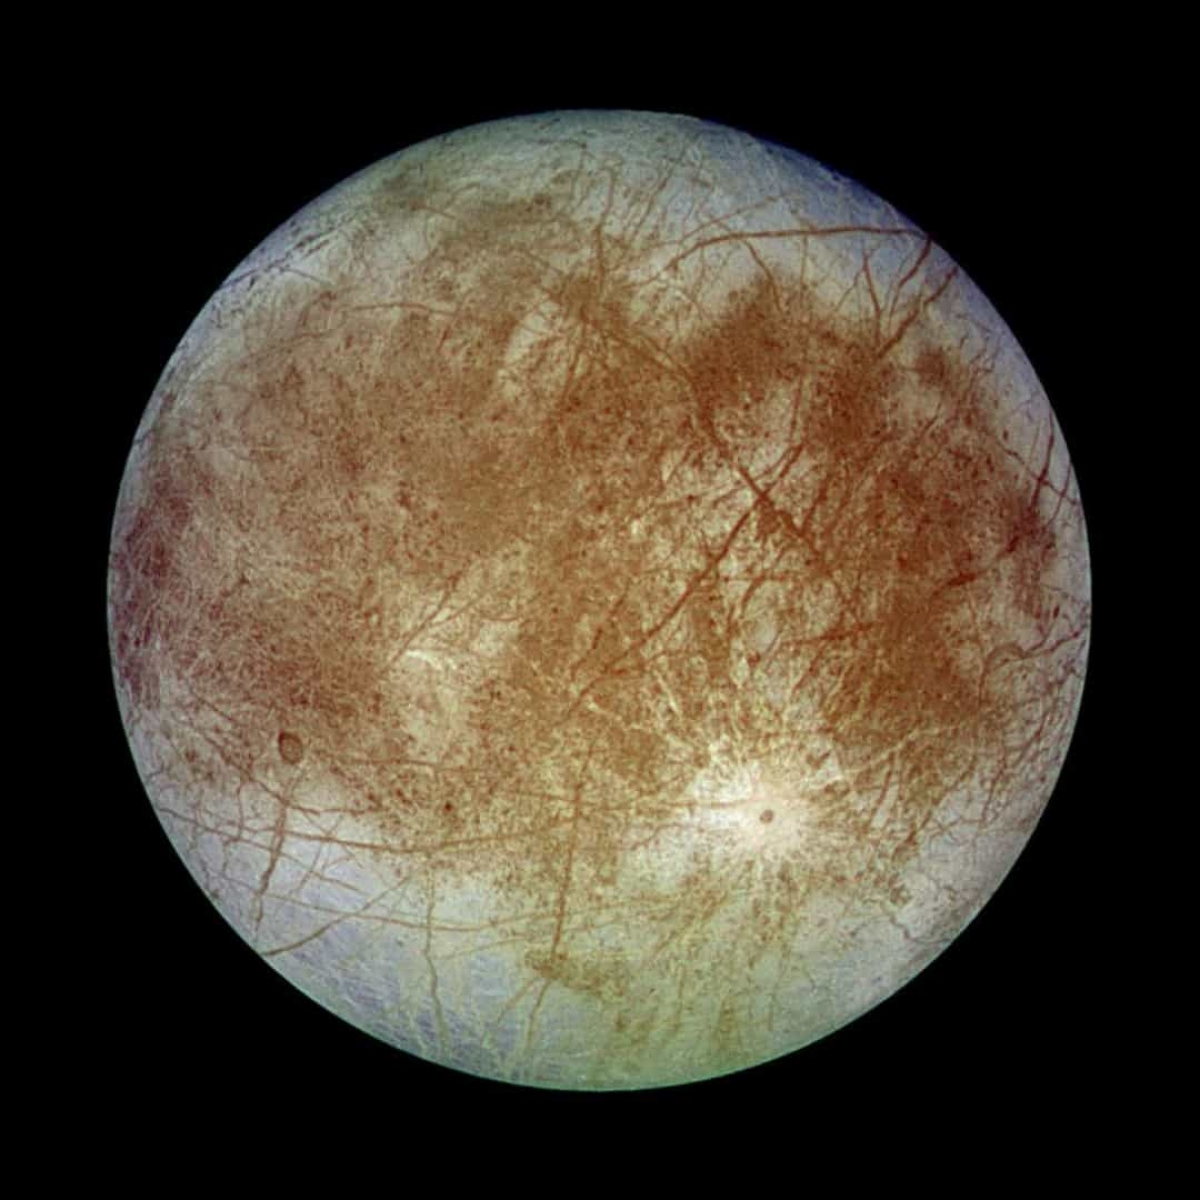 Europa là mặt trăng lớn thứ 4 của Sao Mộc. Người ra cho rằng có một đại dương tồn tại dưới bề mặt băng của Europa.